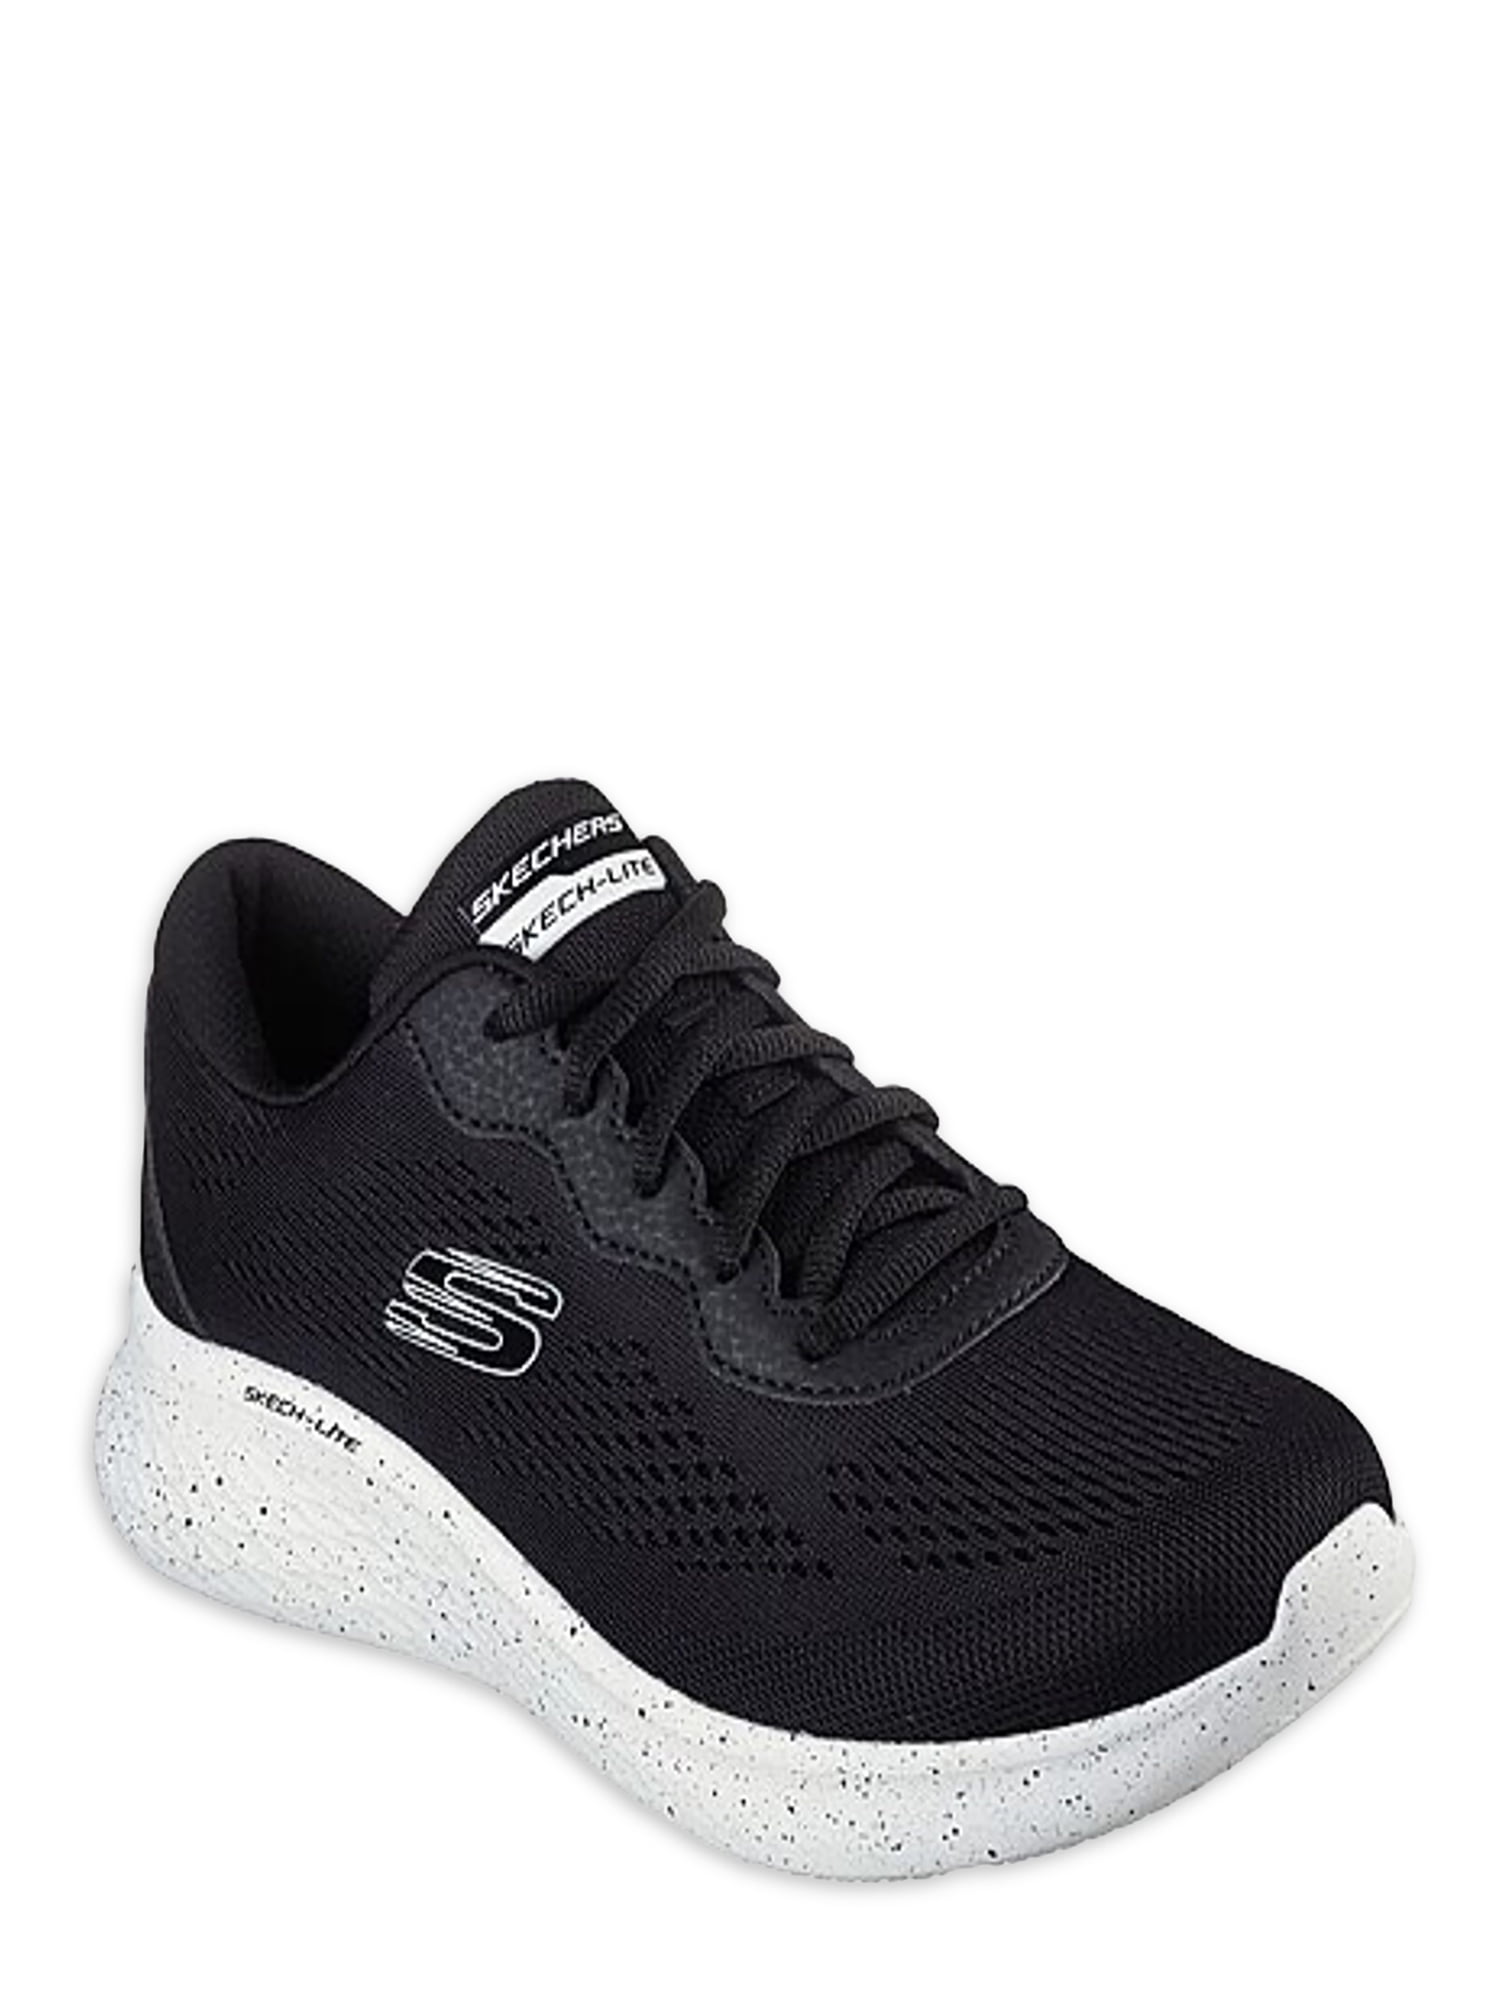 Skechers Women's Skech-Lite Pro Comfort Athletic Sneaker Walmart.com